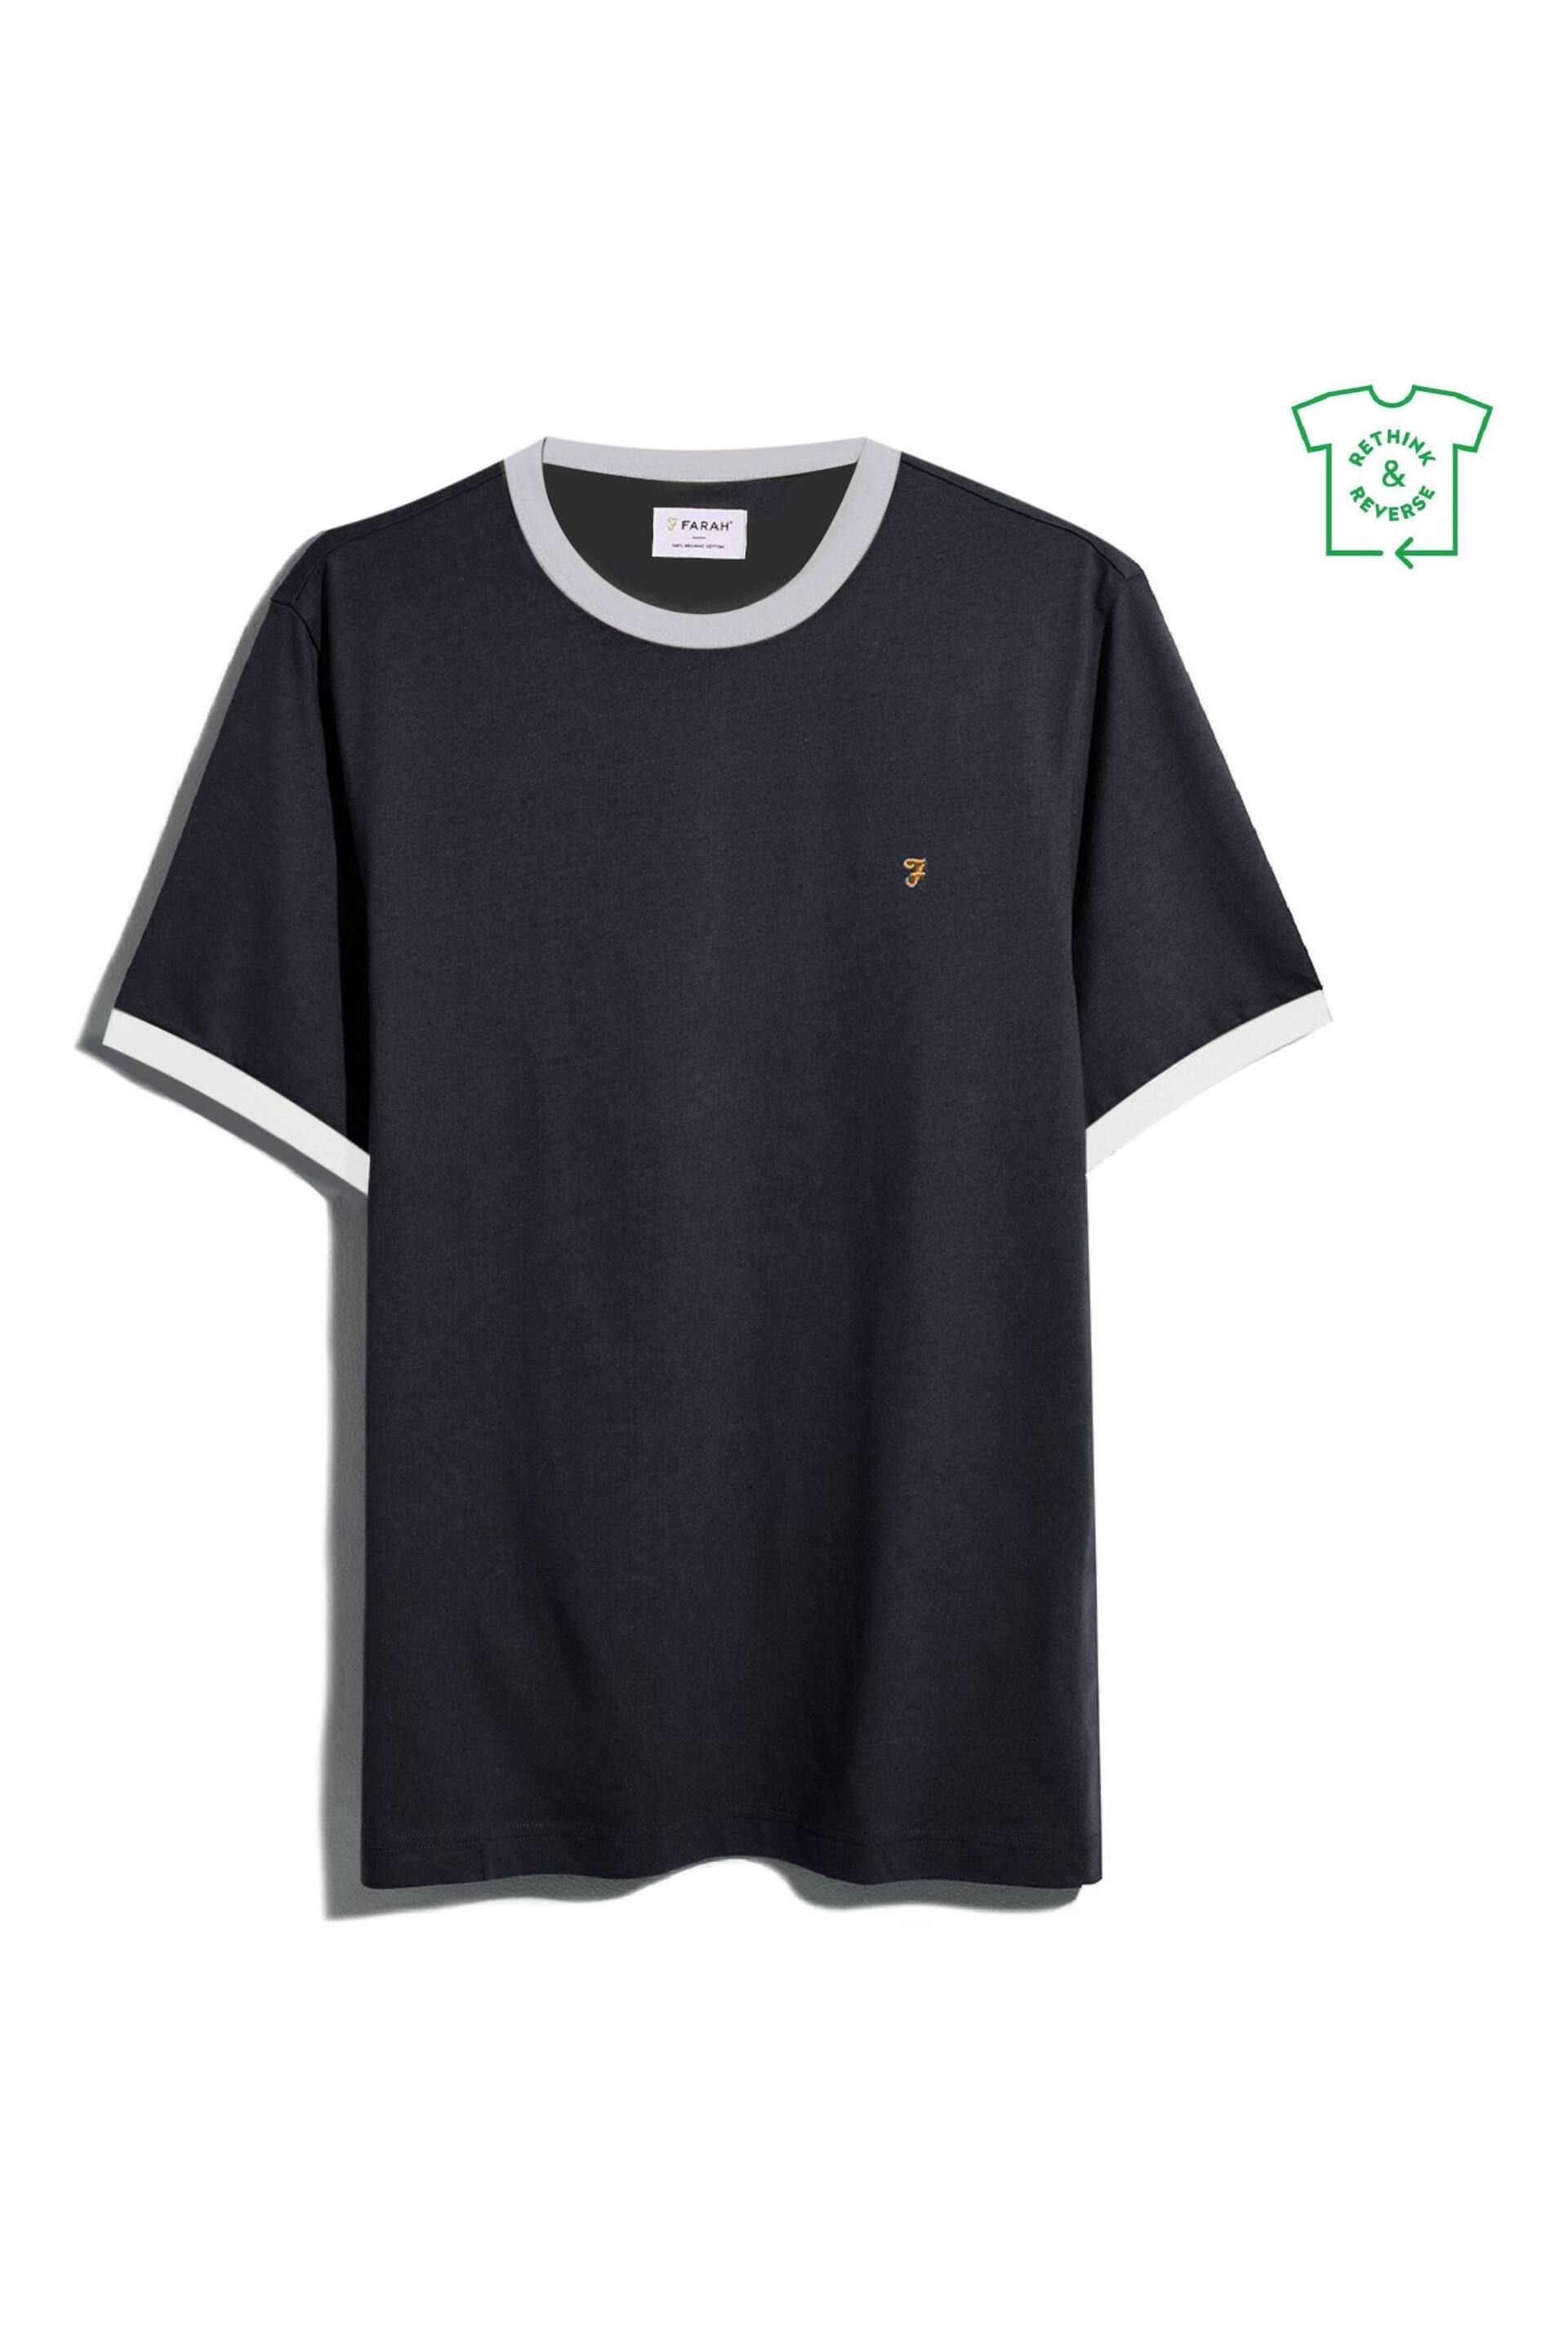 Farah Groves Ringer Short Sleeve T-Shirt - Image 5 of 5